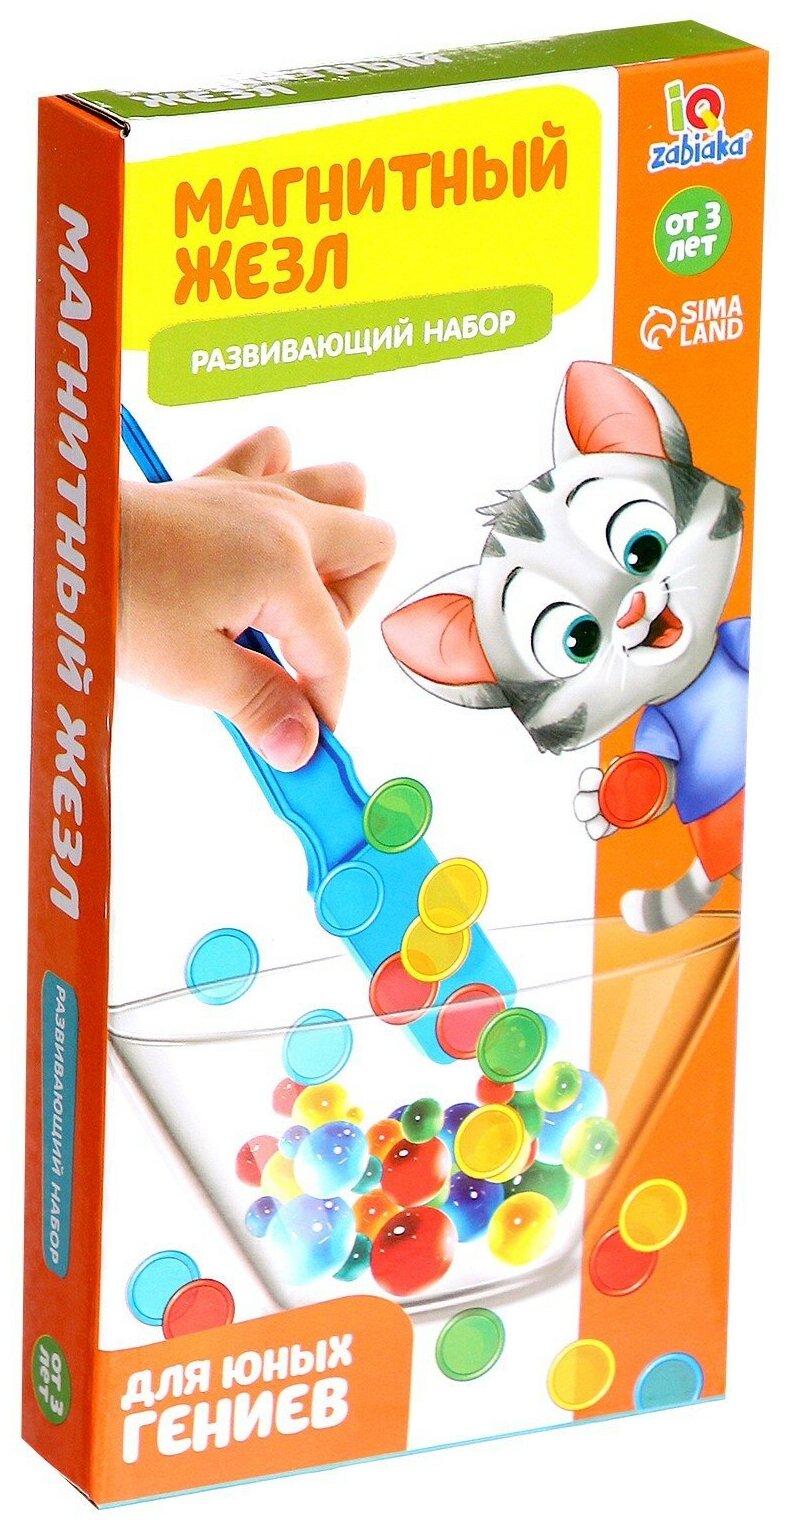 Развивающий набор "Магнитный жезл", IQ-ZABIAKA, с игрушкой, по методике Монтессори, для детей и малышей